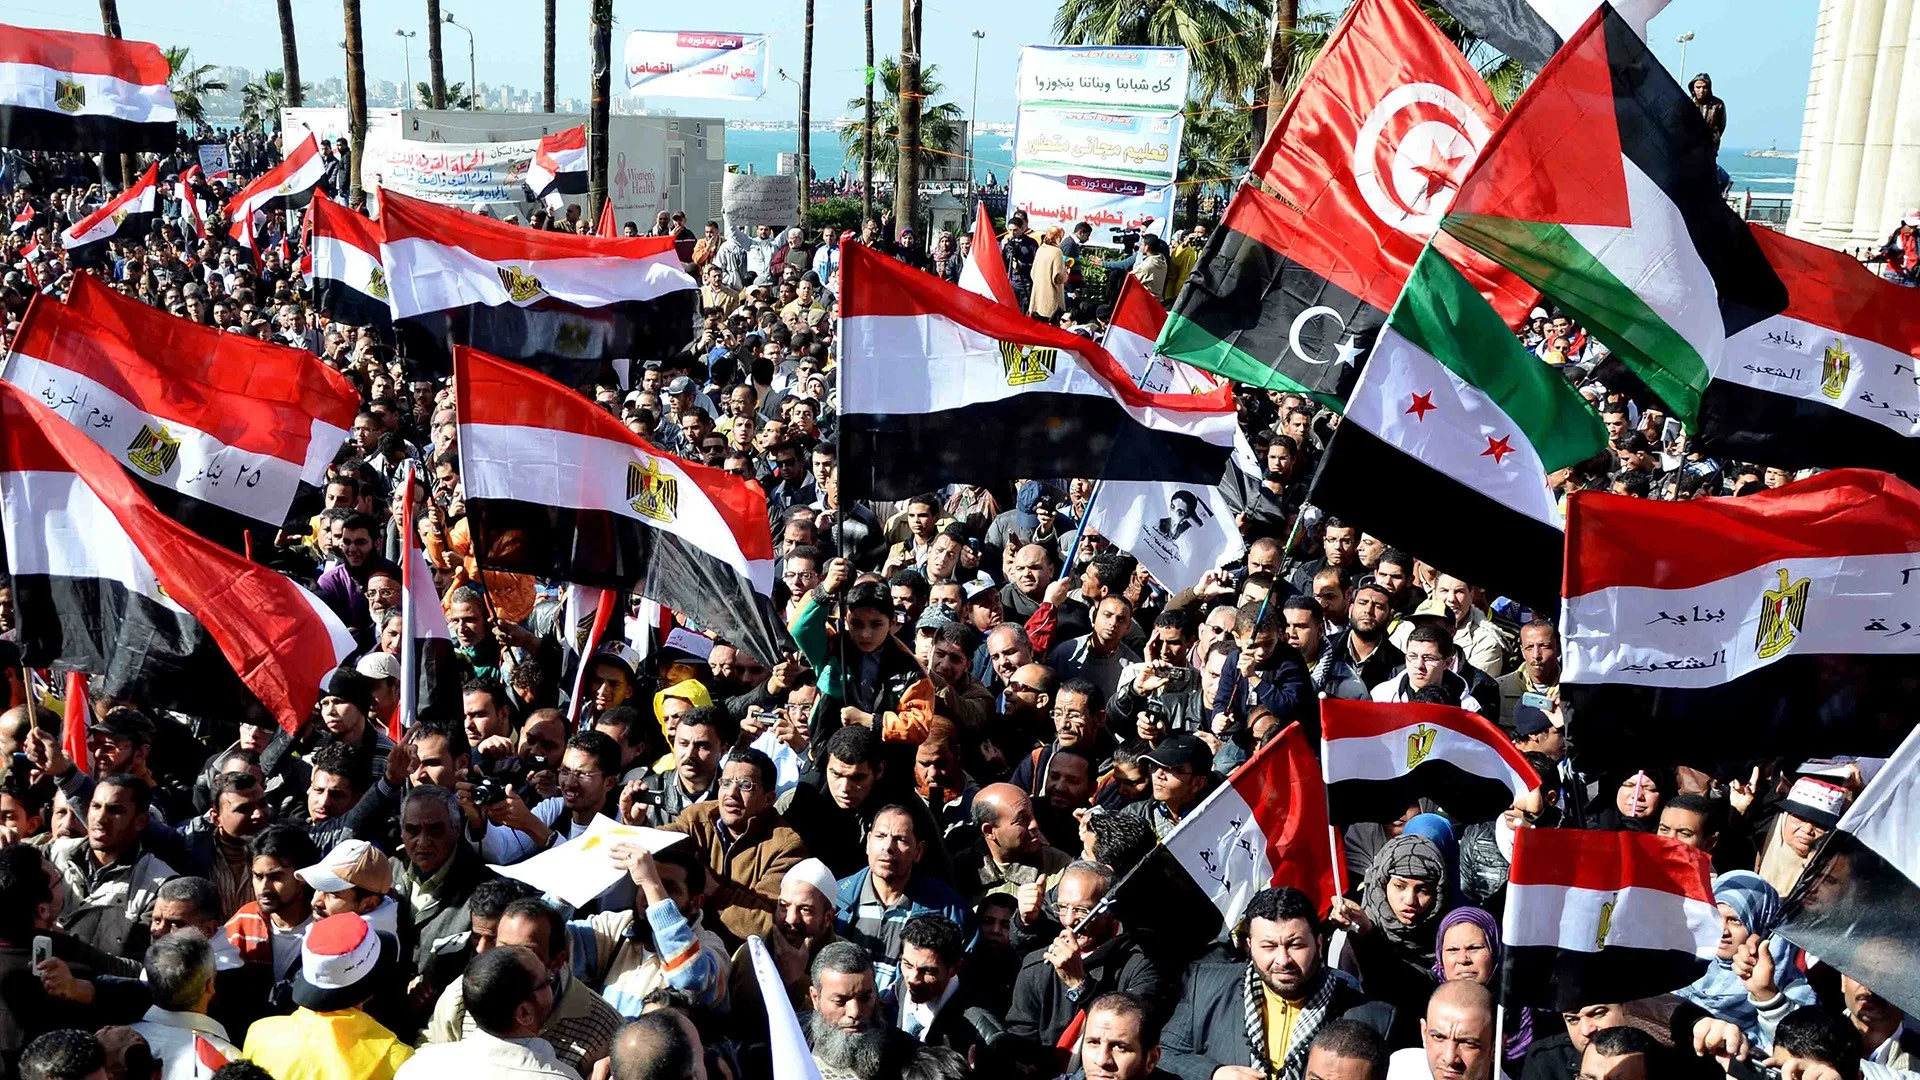 ثورات الربيع العربي شكلت واقعًا جديد في المنطقة خلال 10 سنوات الماضية